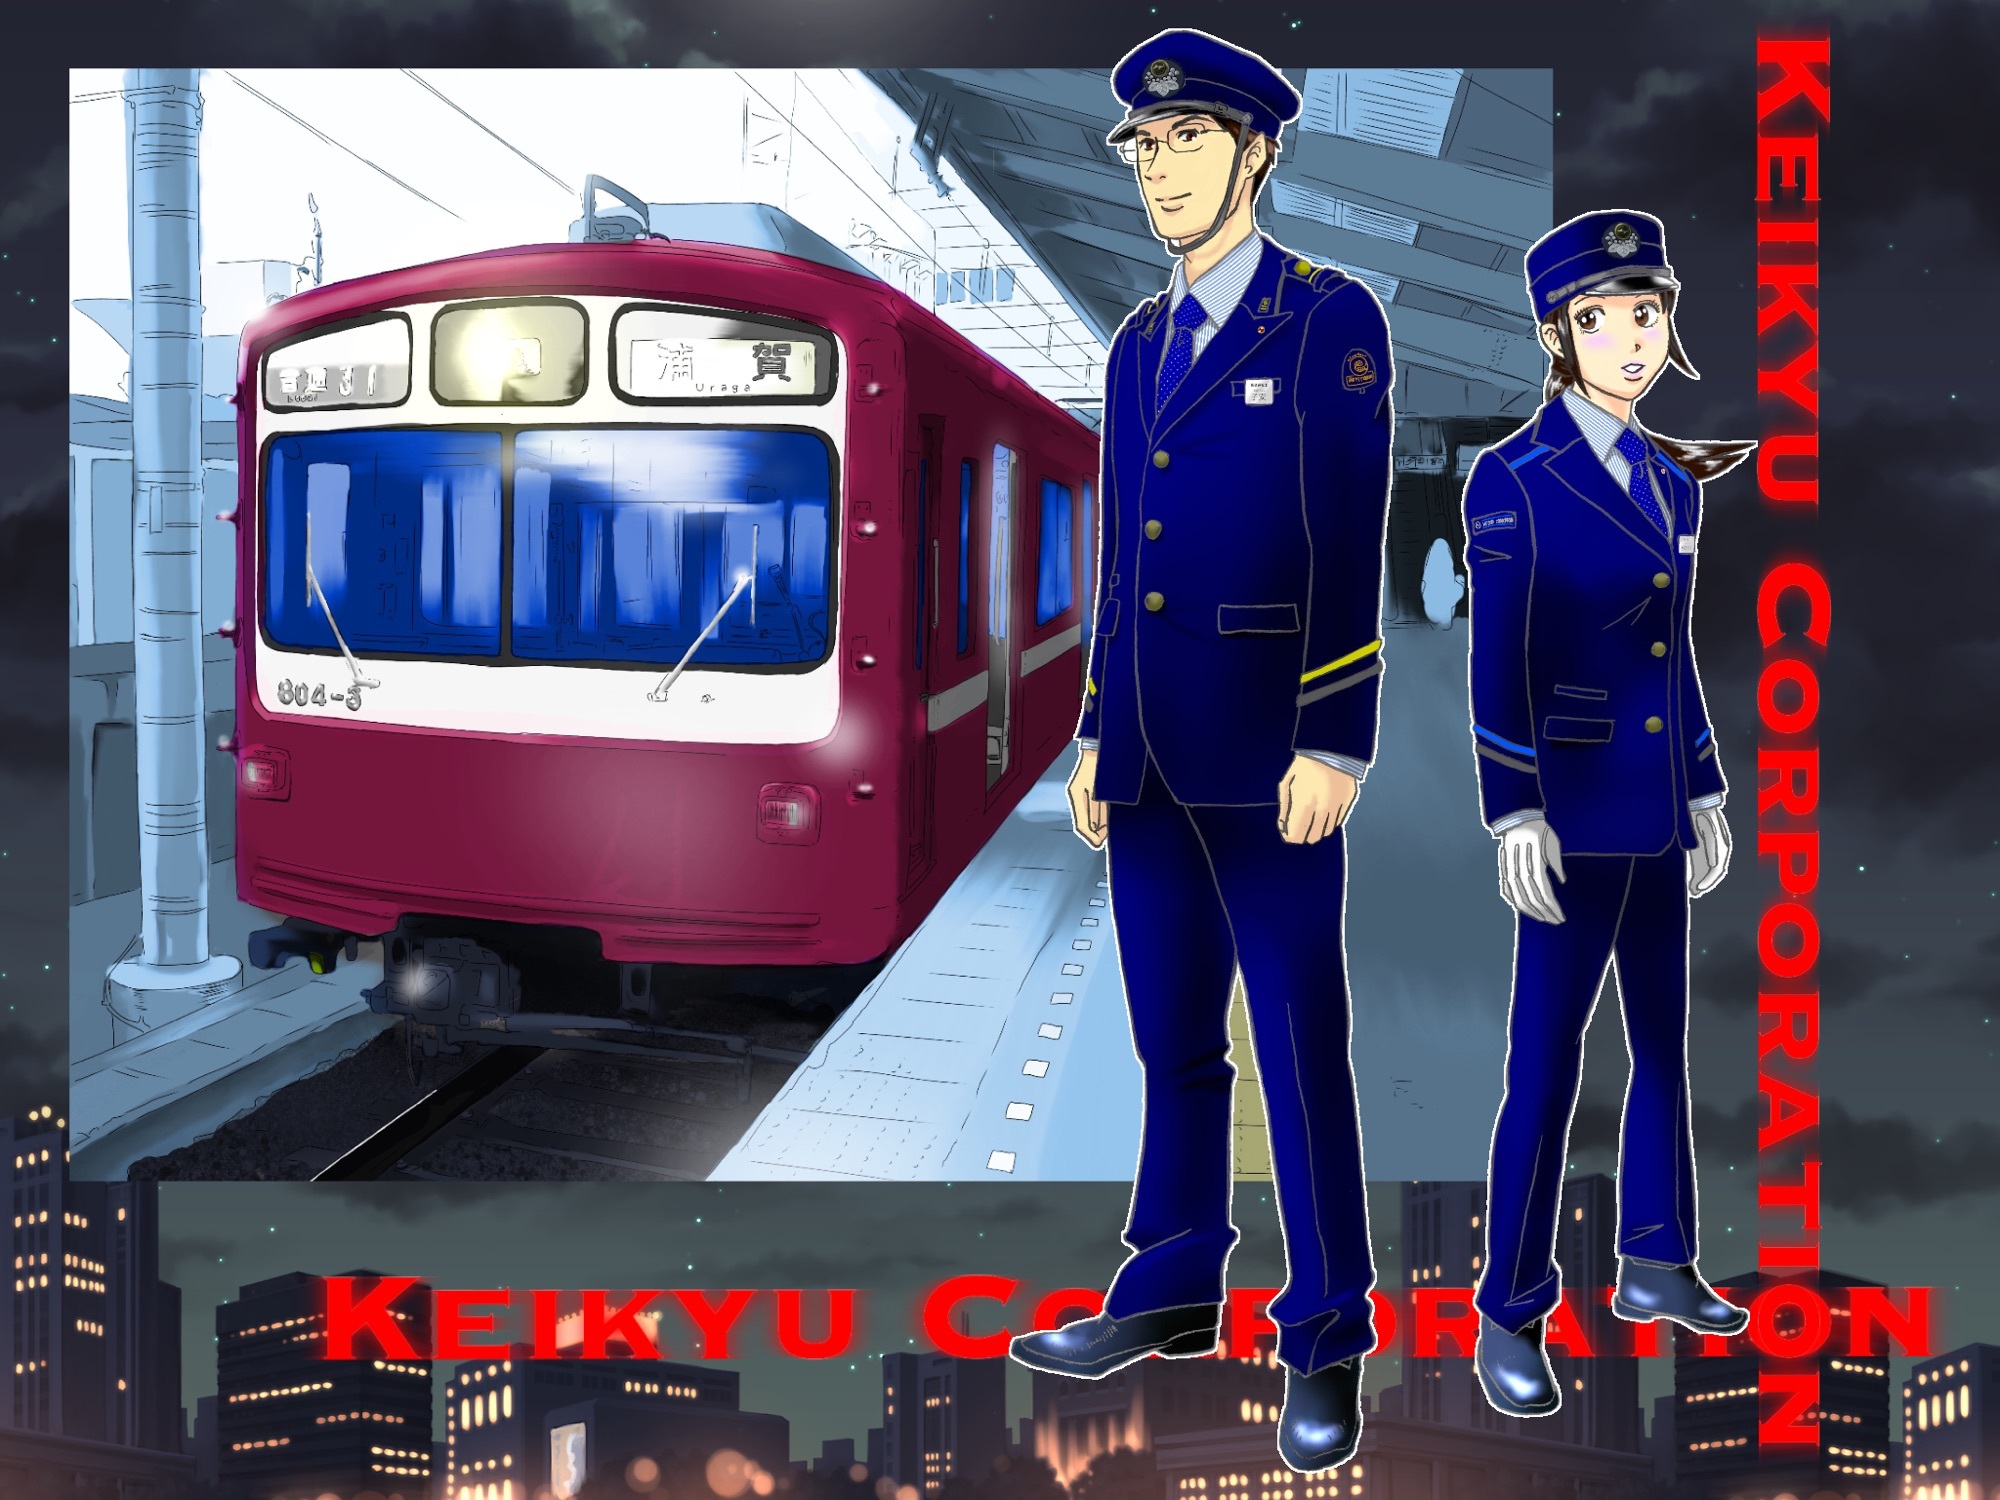 京急電鉄の制服の描き方 鉄道員に願いを